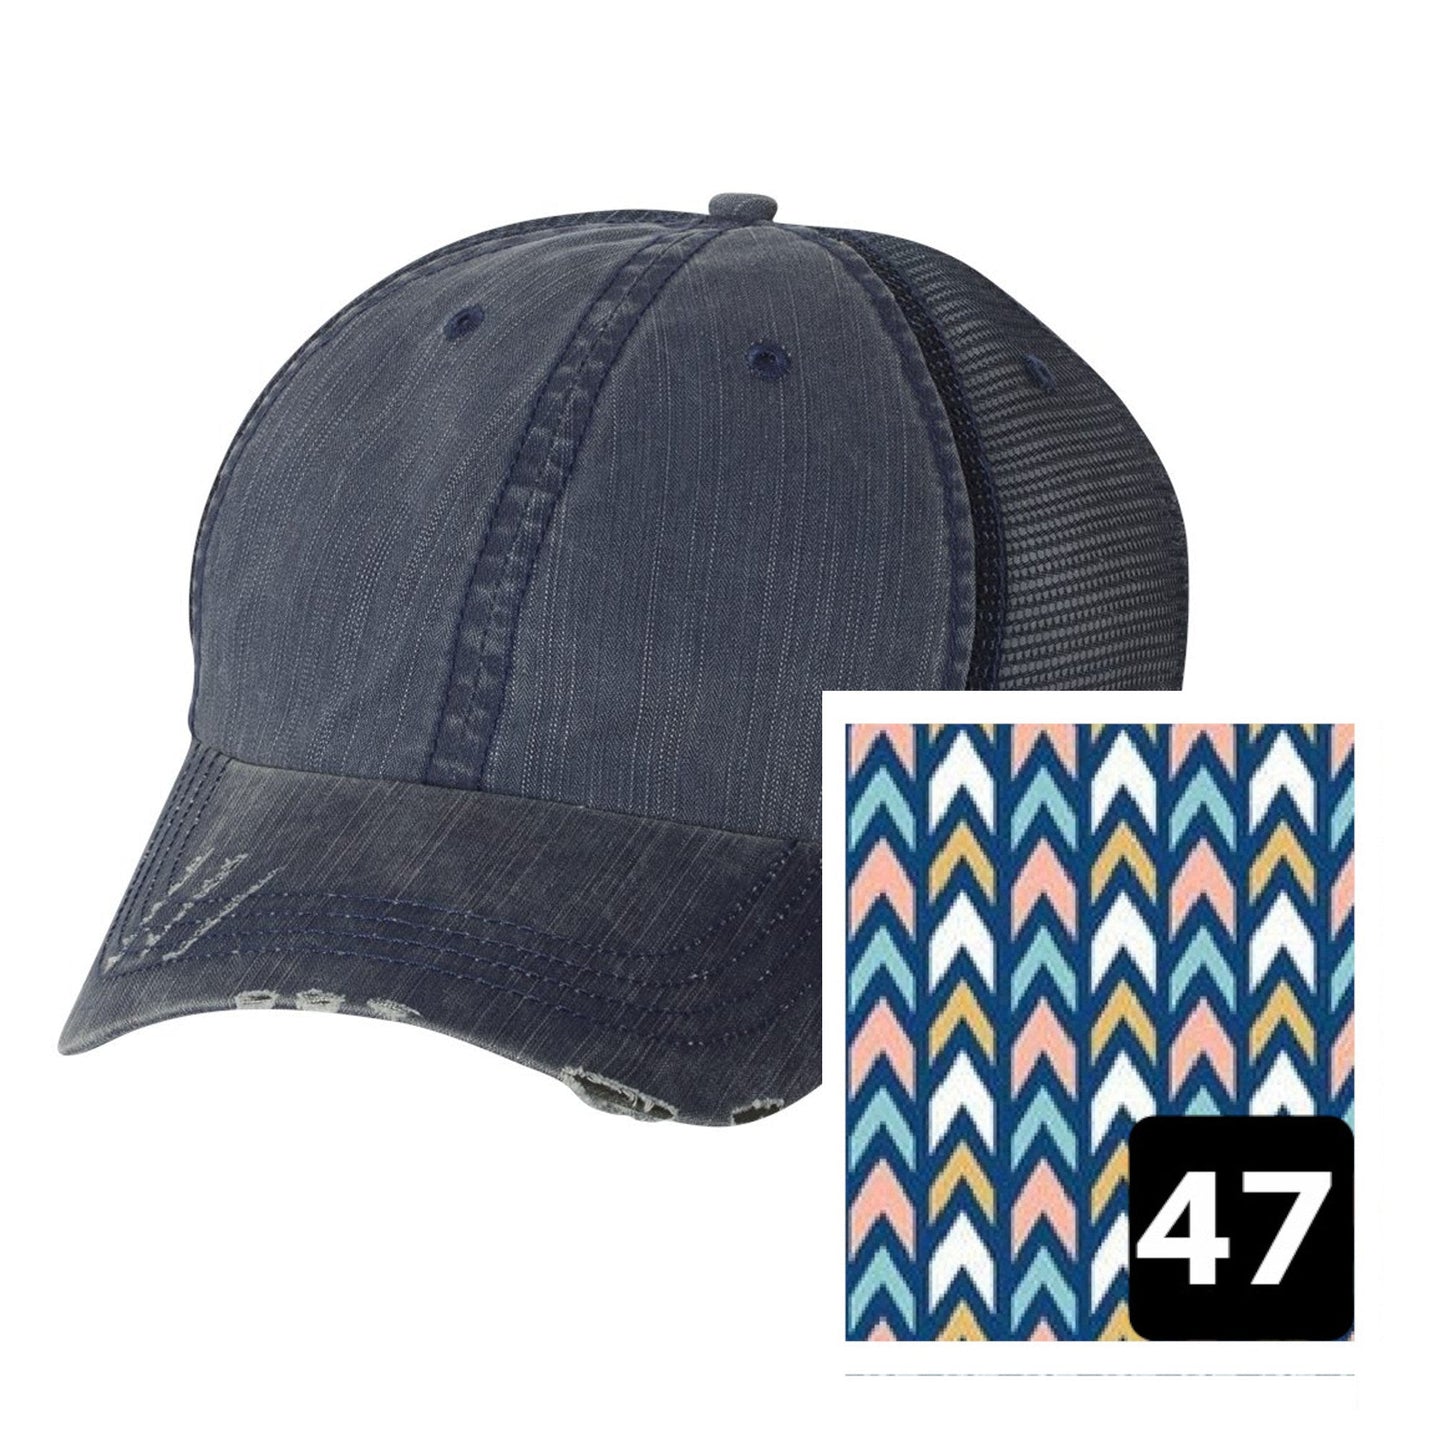 Louisiana Hat | Navy Distressed Trucker Cap | Many Fabric Choices